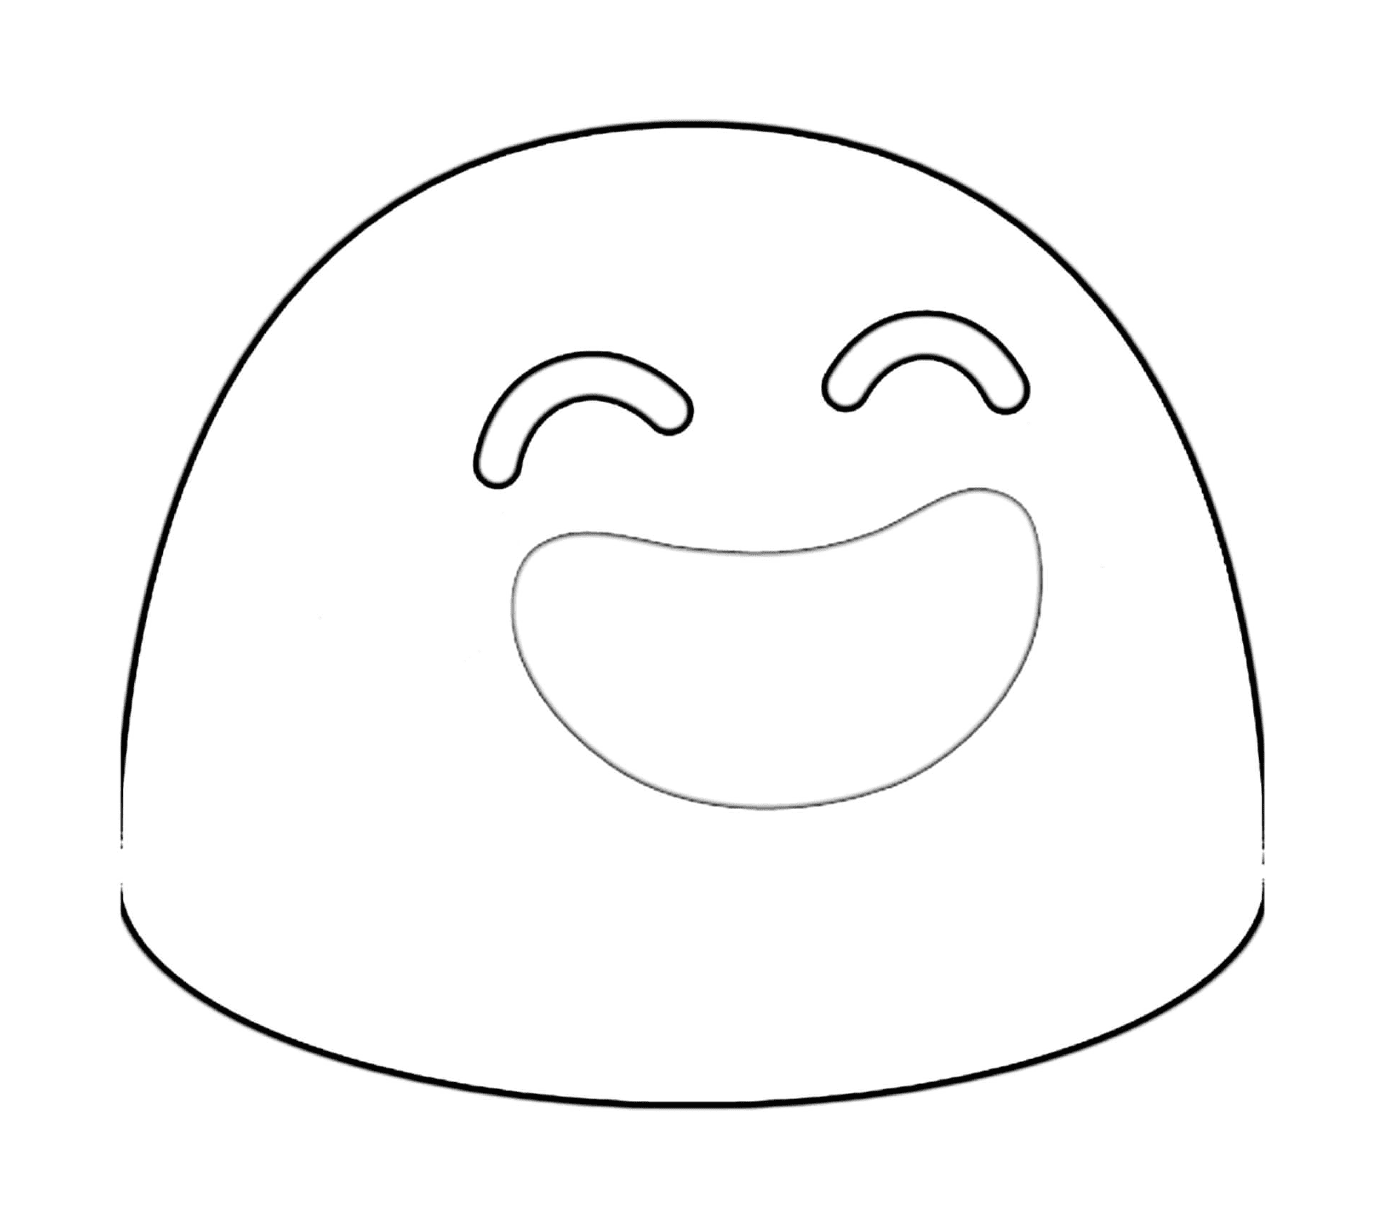  Ein Gesicht mit einem großen Lächeln gezeichnet 